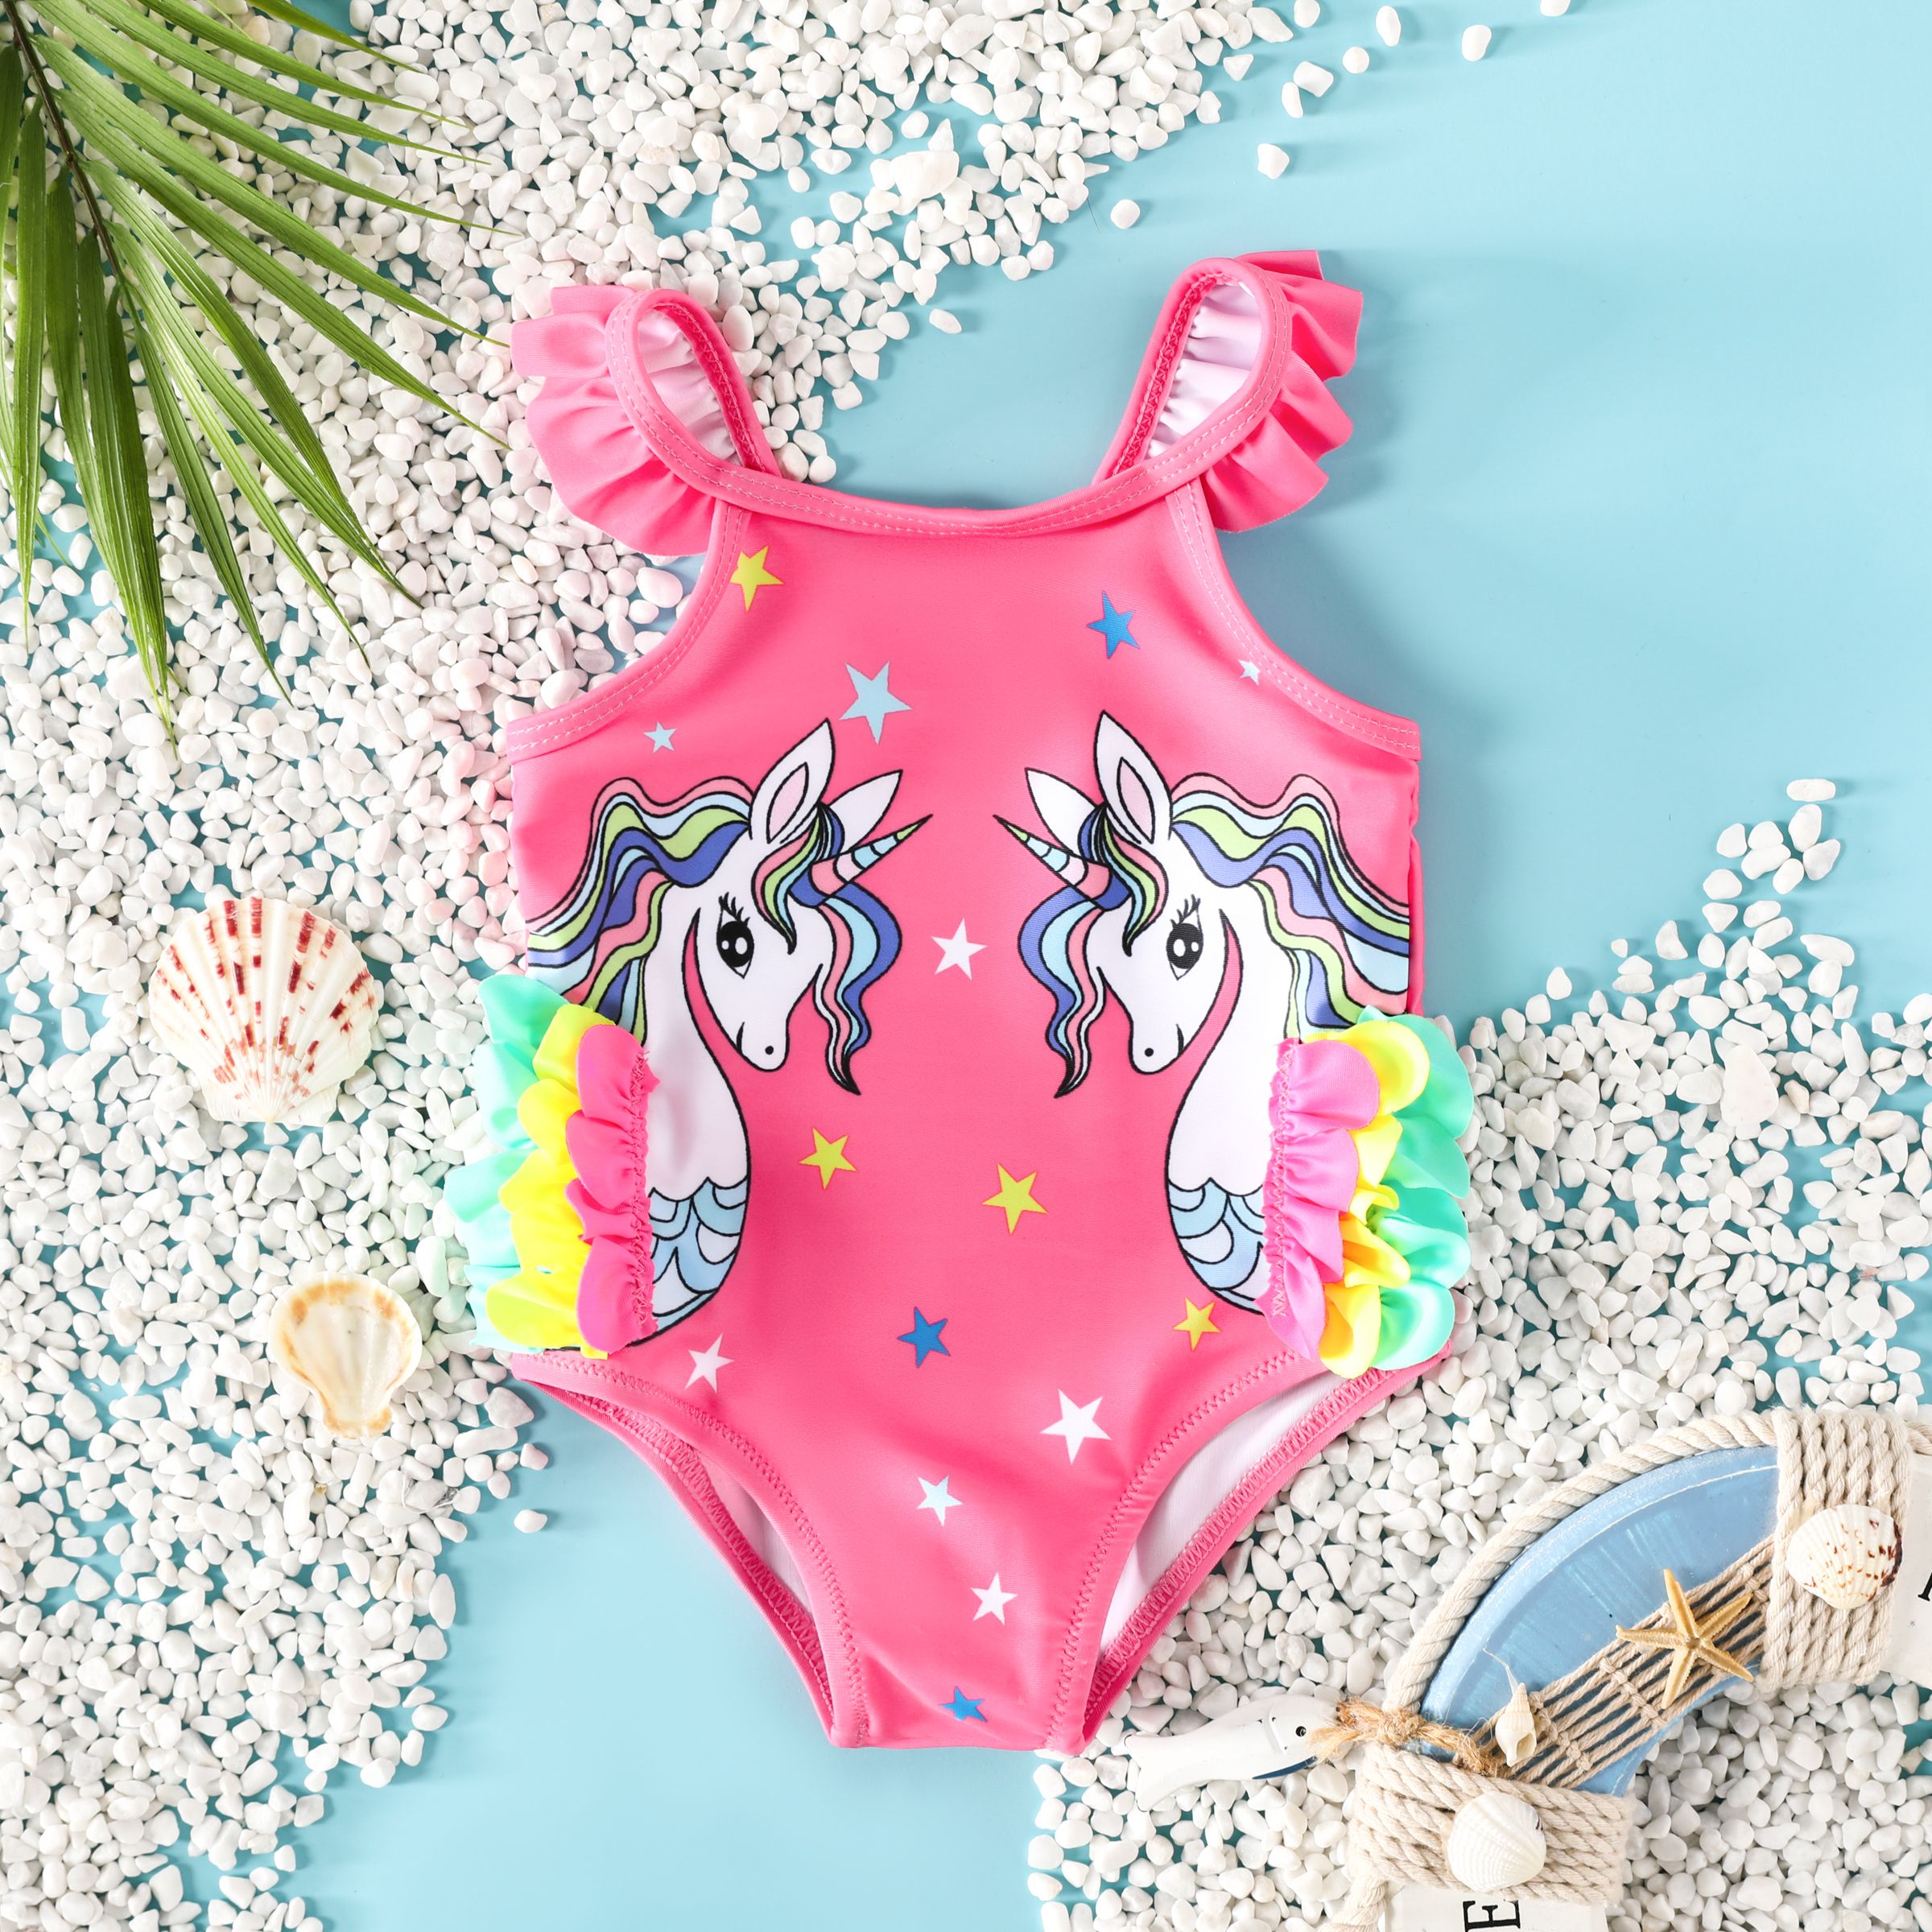 超觸覺 3D 動物列印女嬰的獨角獸泳裝套裝